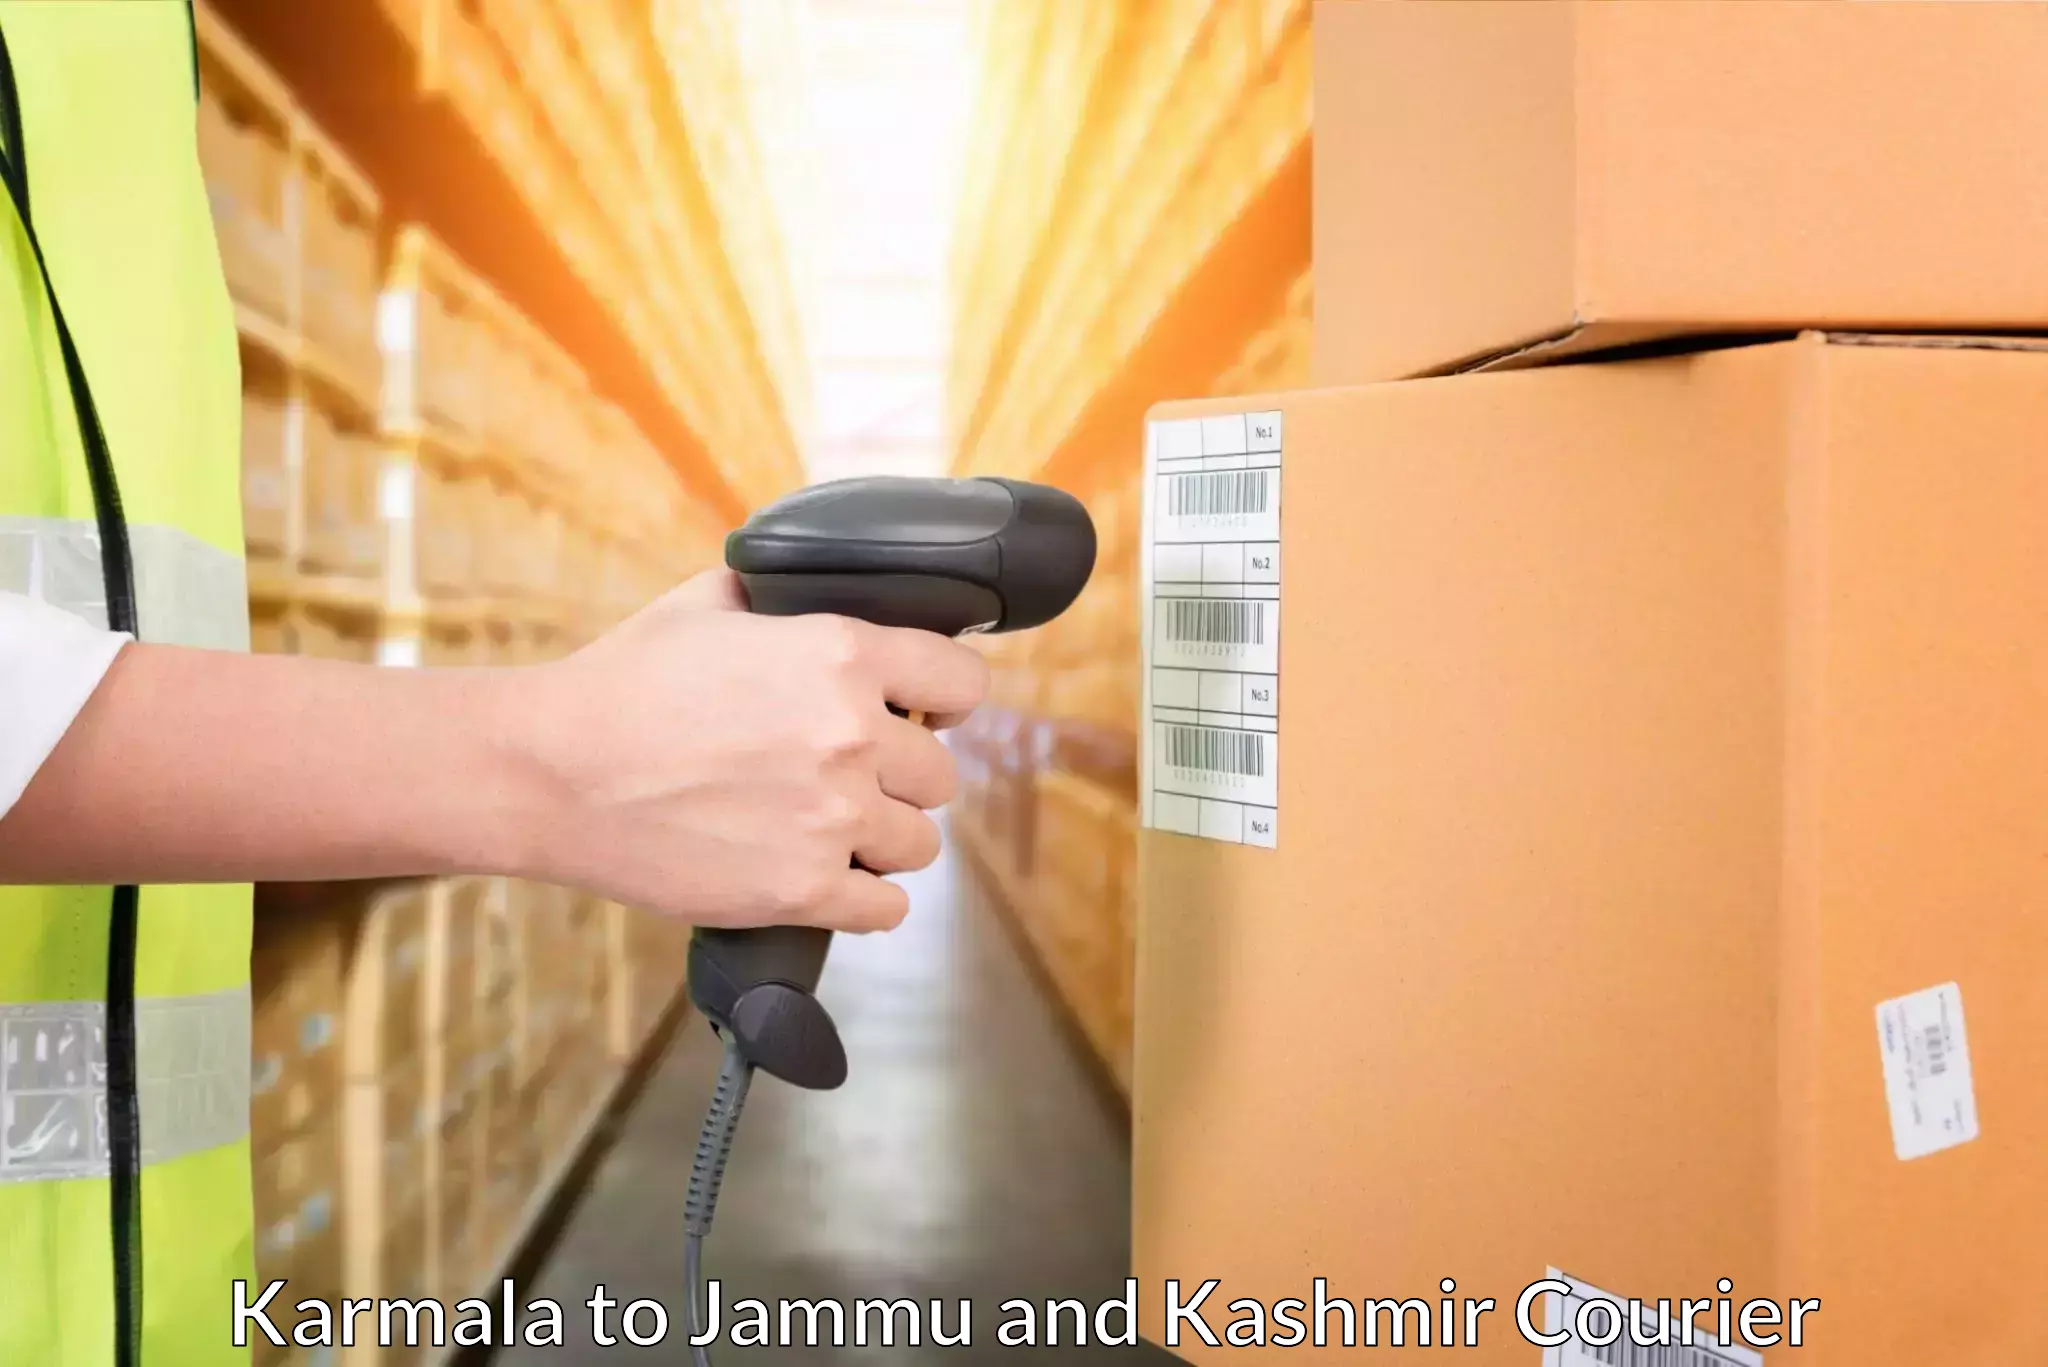 Express delivery capabilities Karmala to Doda